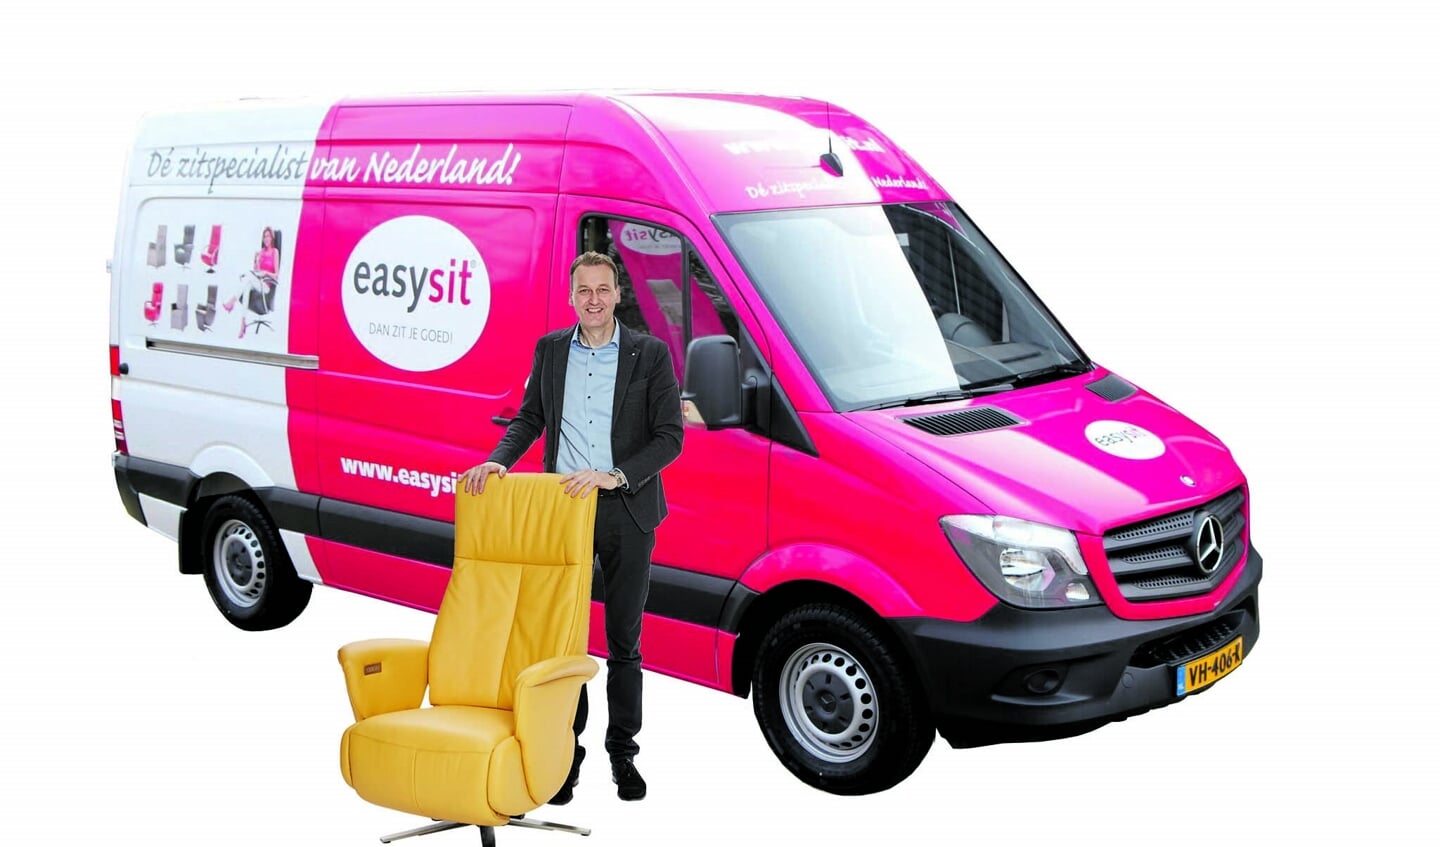 Roel Brouwer is een telg uit een bekende meubelmakersfamilie. Sinds 2009 is hij eigenaar van EasySit.